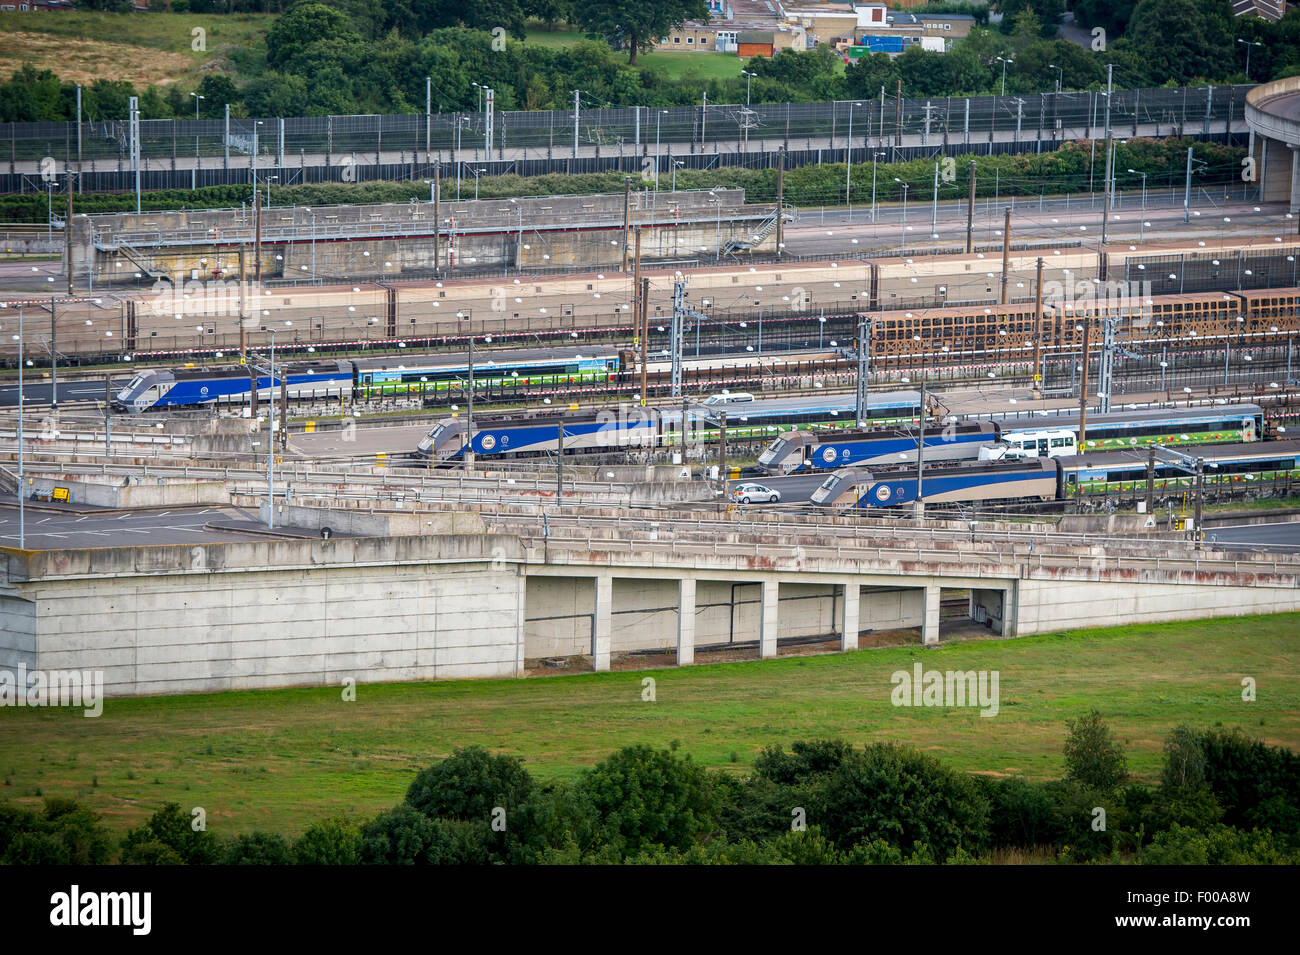 Les trains Eurotunnel le Shuttle attendent au terminal de Cheriton avant de traverser l'Eurotunnel pour la France. Banque D'Images